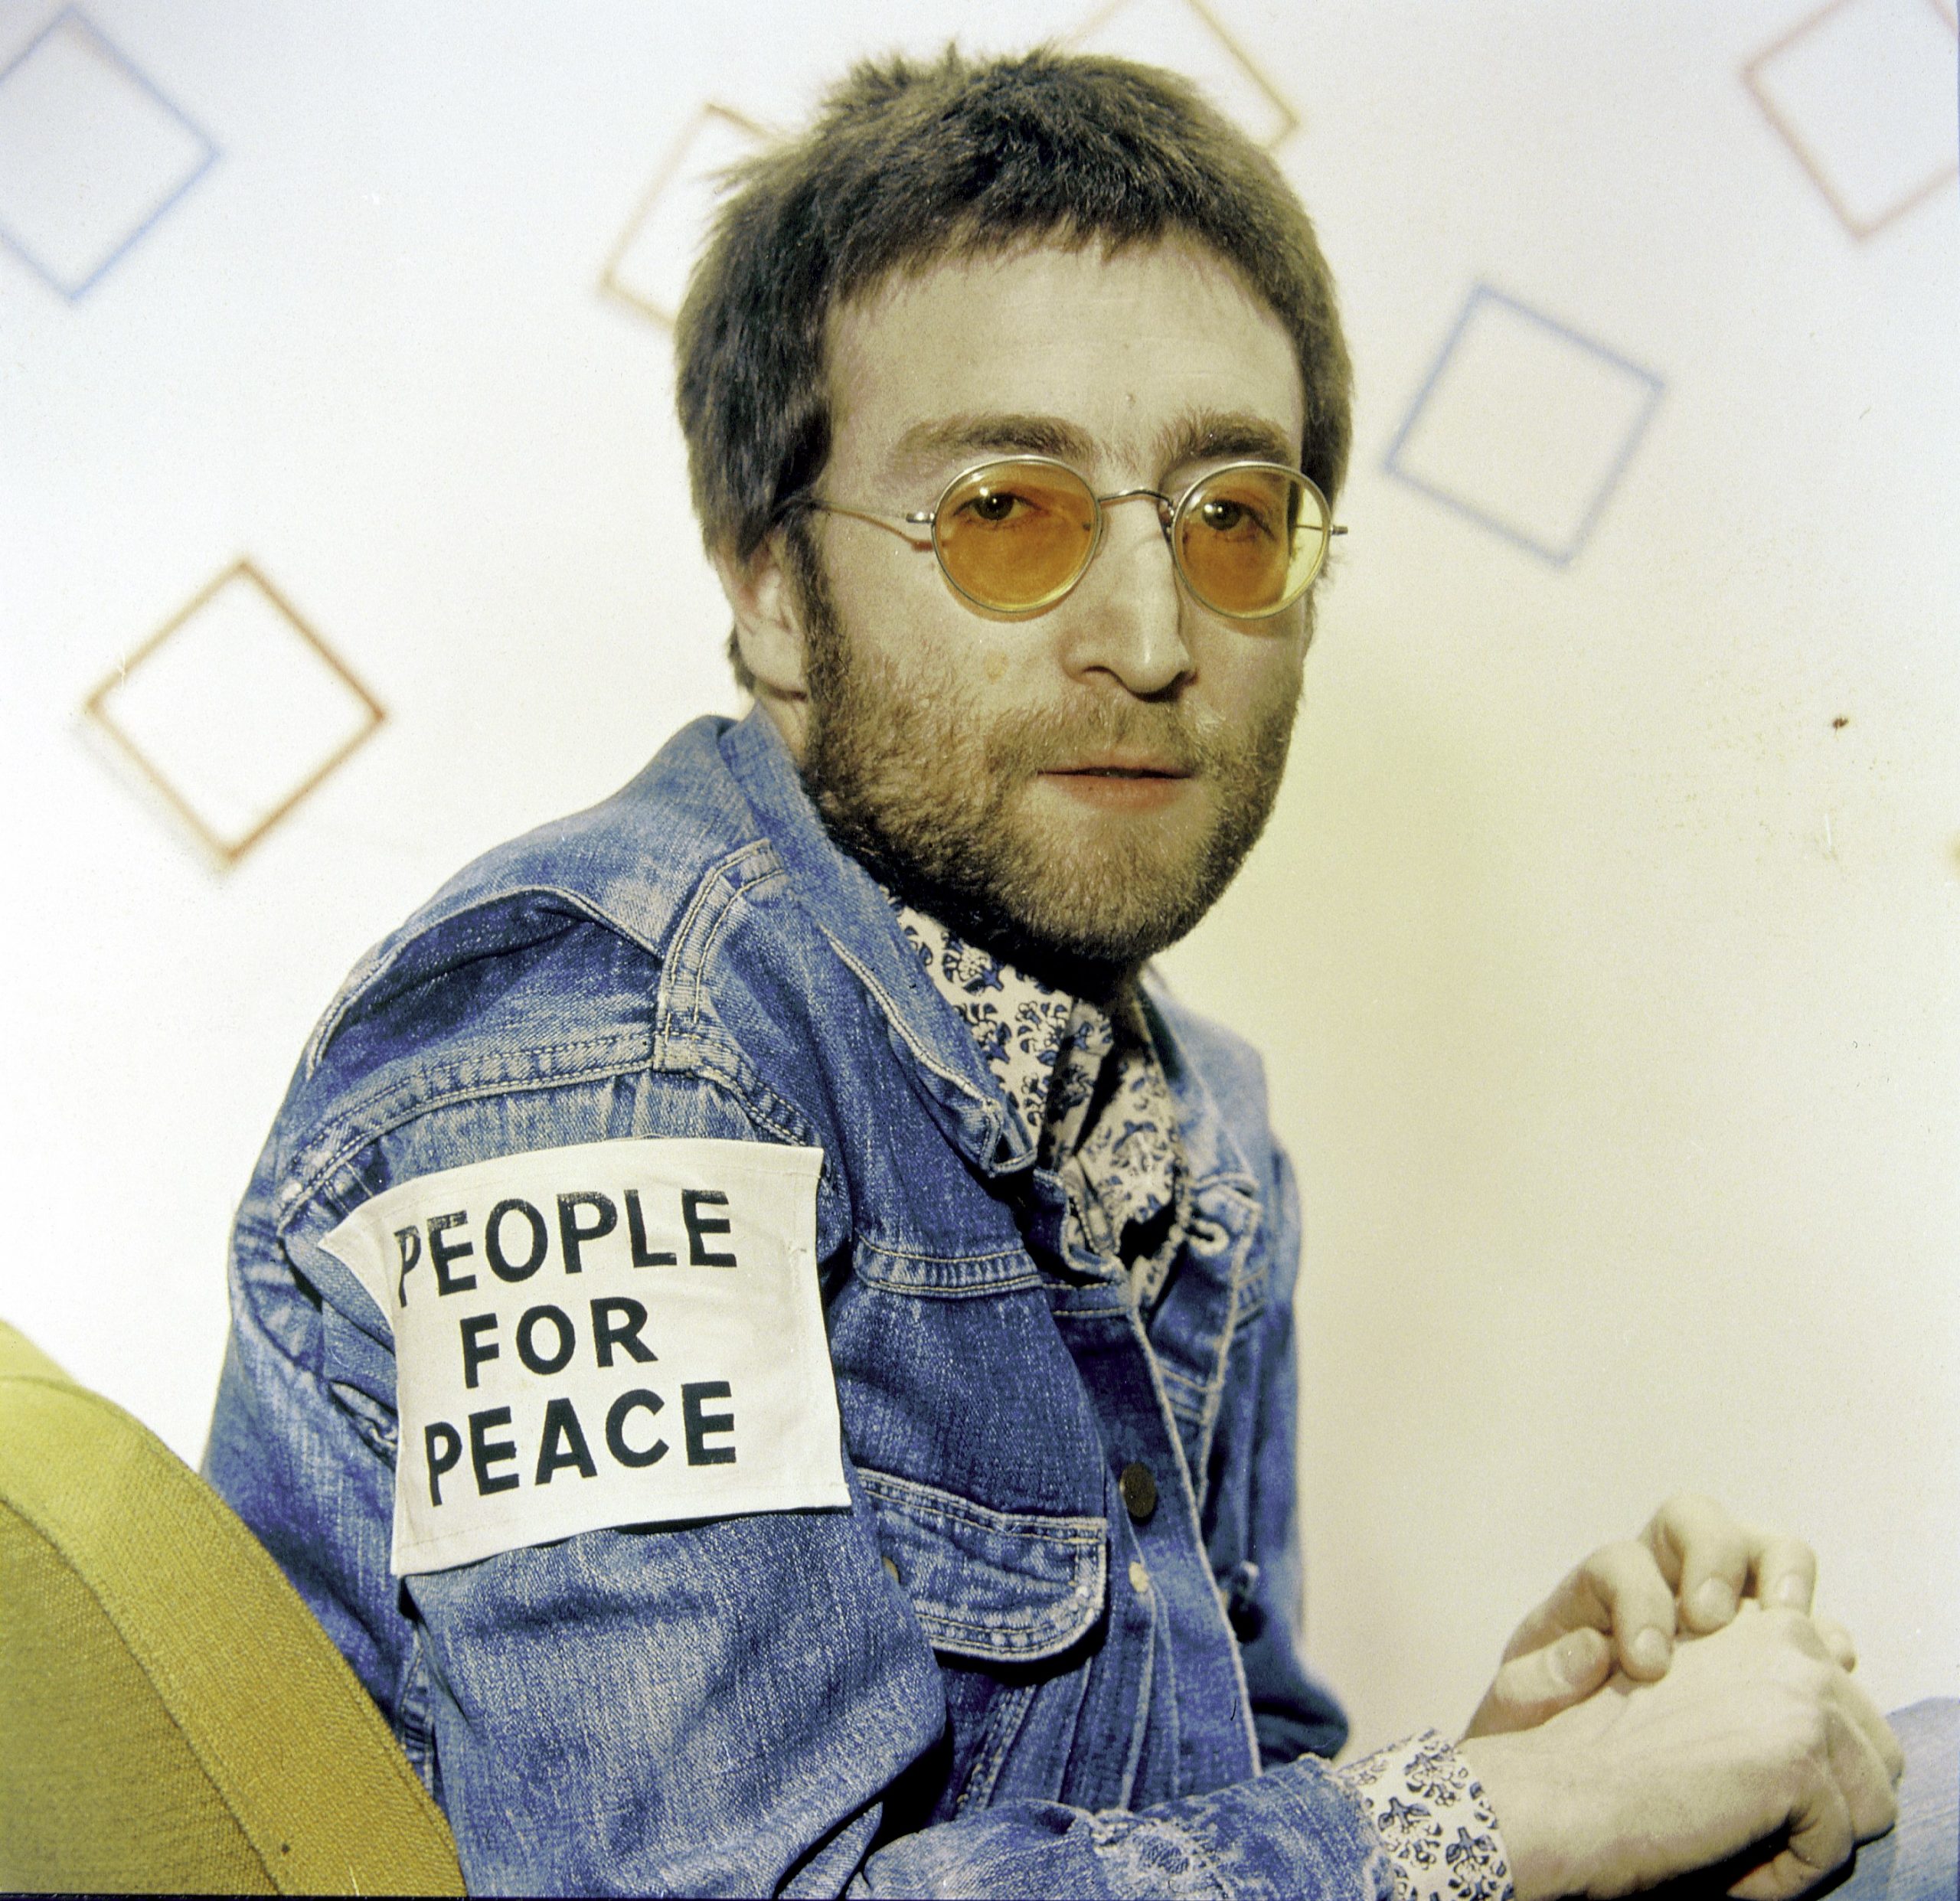 "Cold Turkey" singer John Lennon wearing yellow glasses